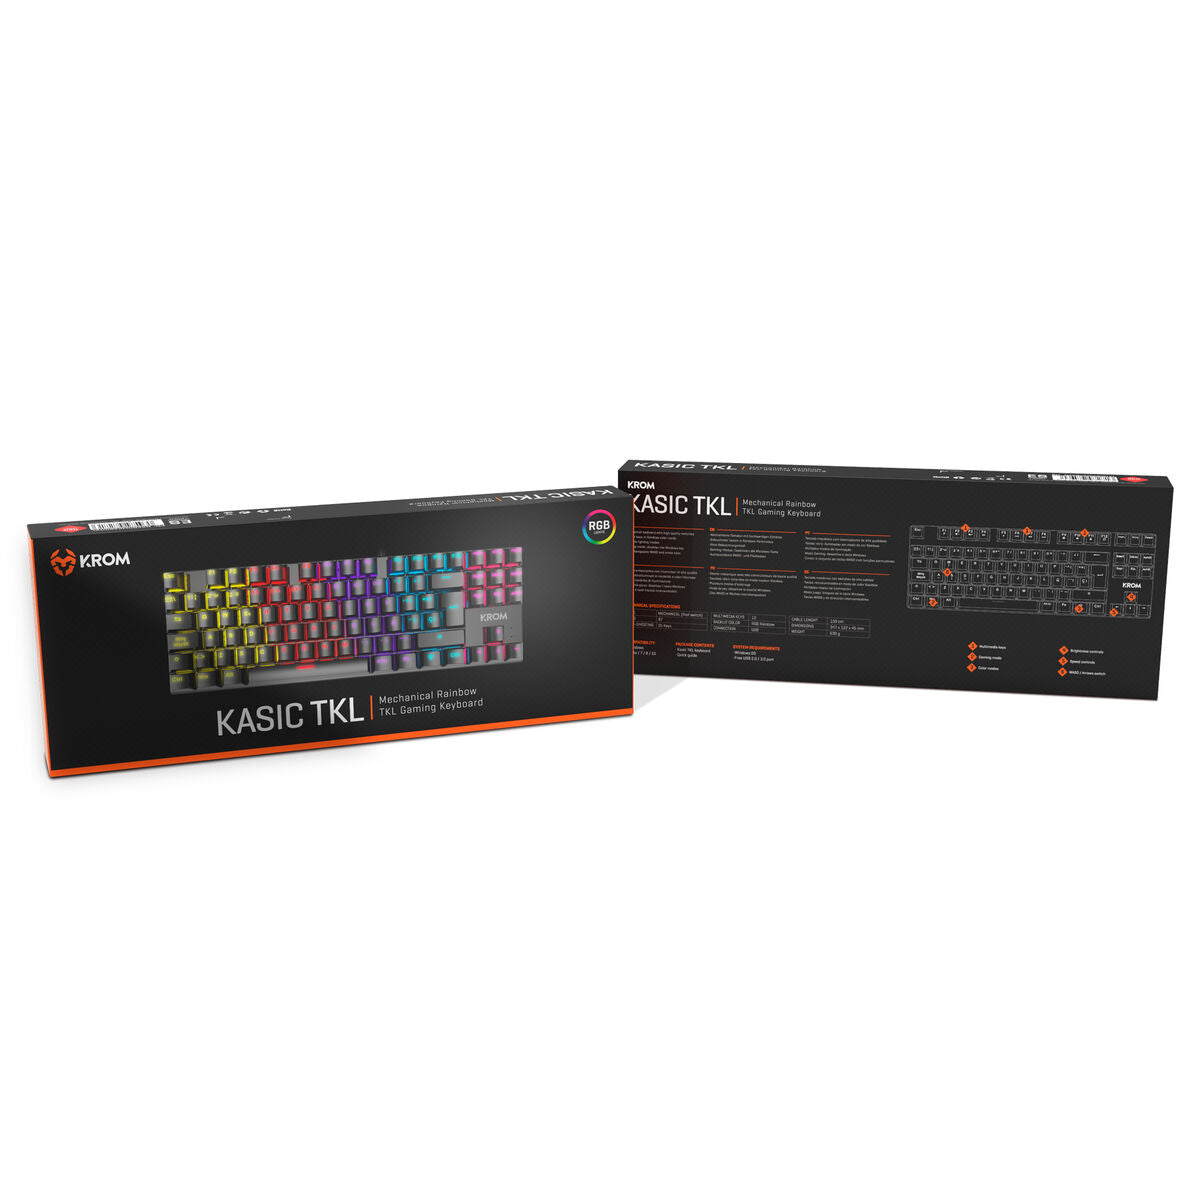 Krom NXKROMKASICTKL Tastatur mit schwarzer Hintergrundbeleuchtung